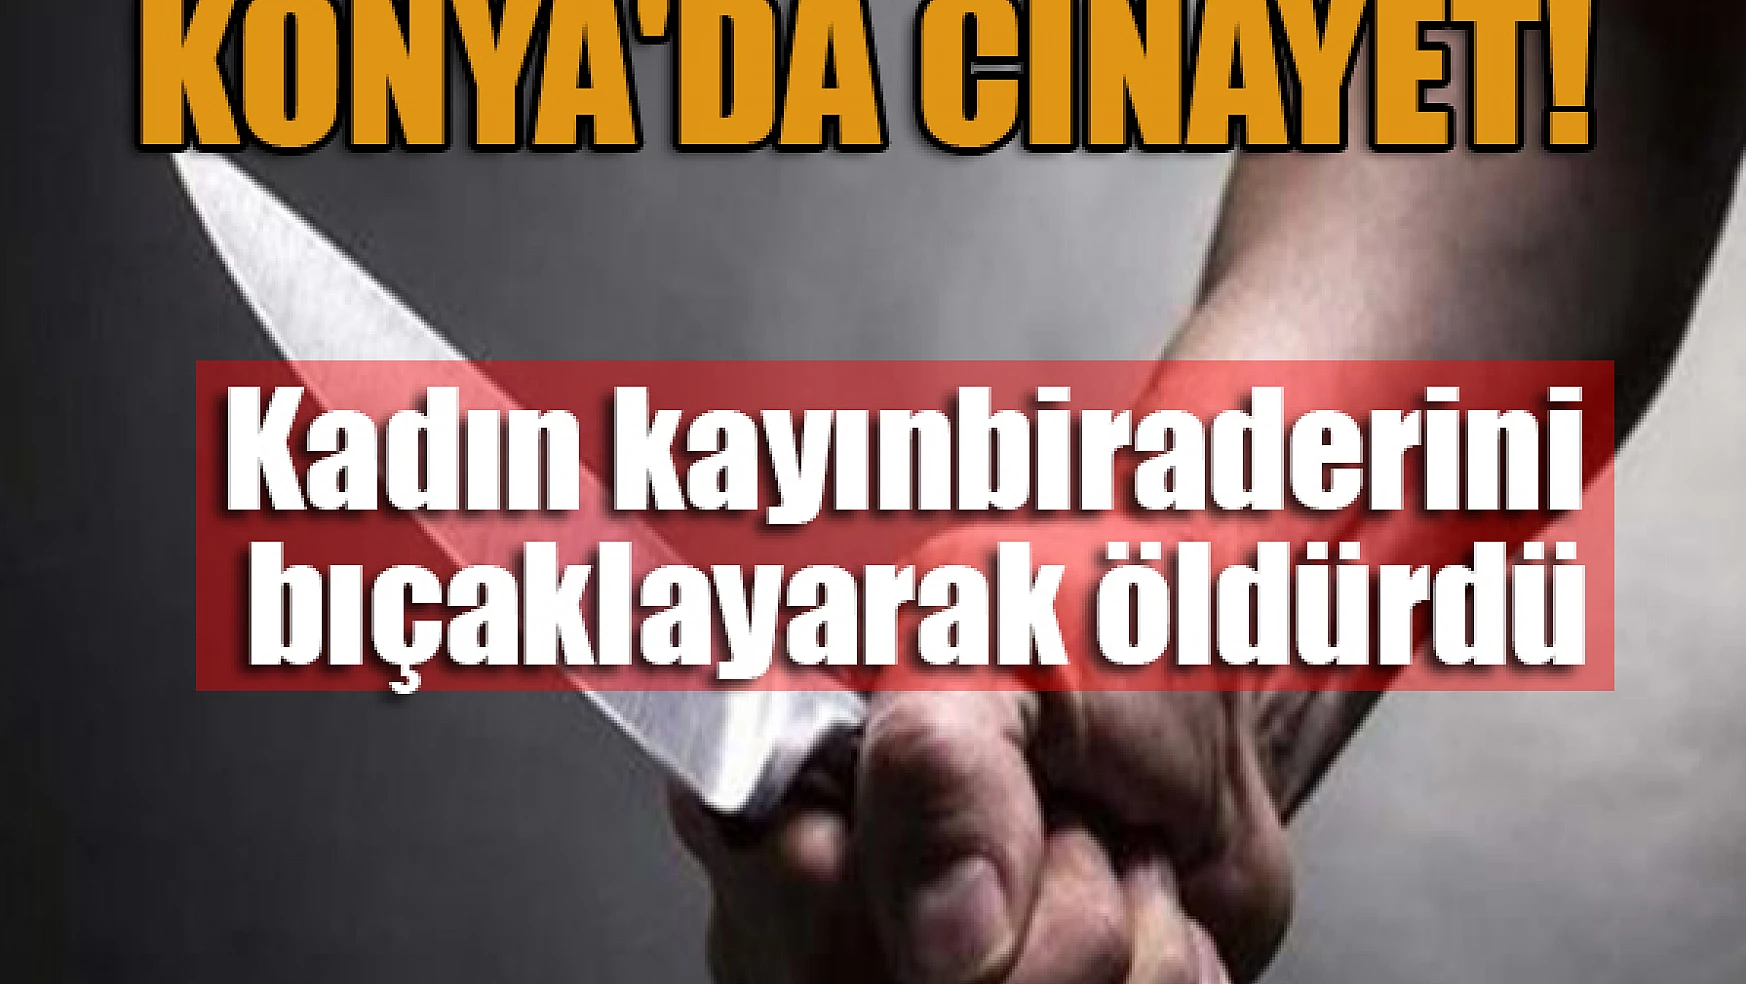  Konya'da cinayet! Kadın kayınbiraderini bıçaklayarak öldürdü